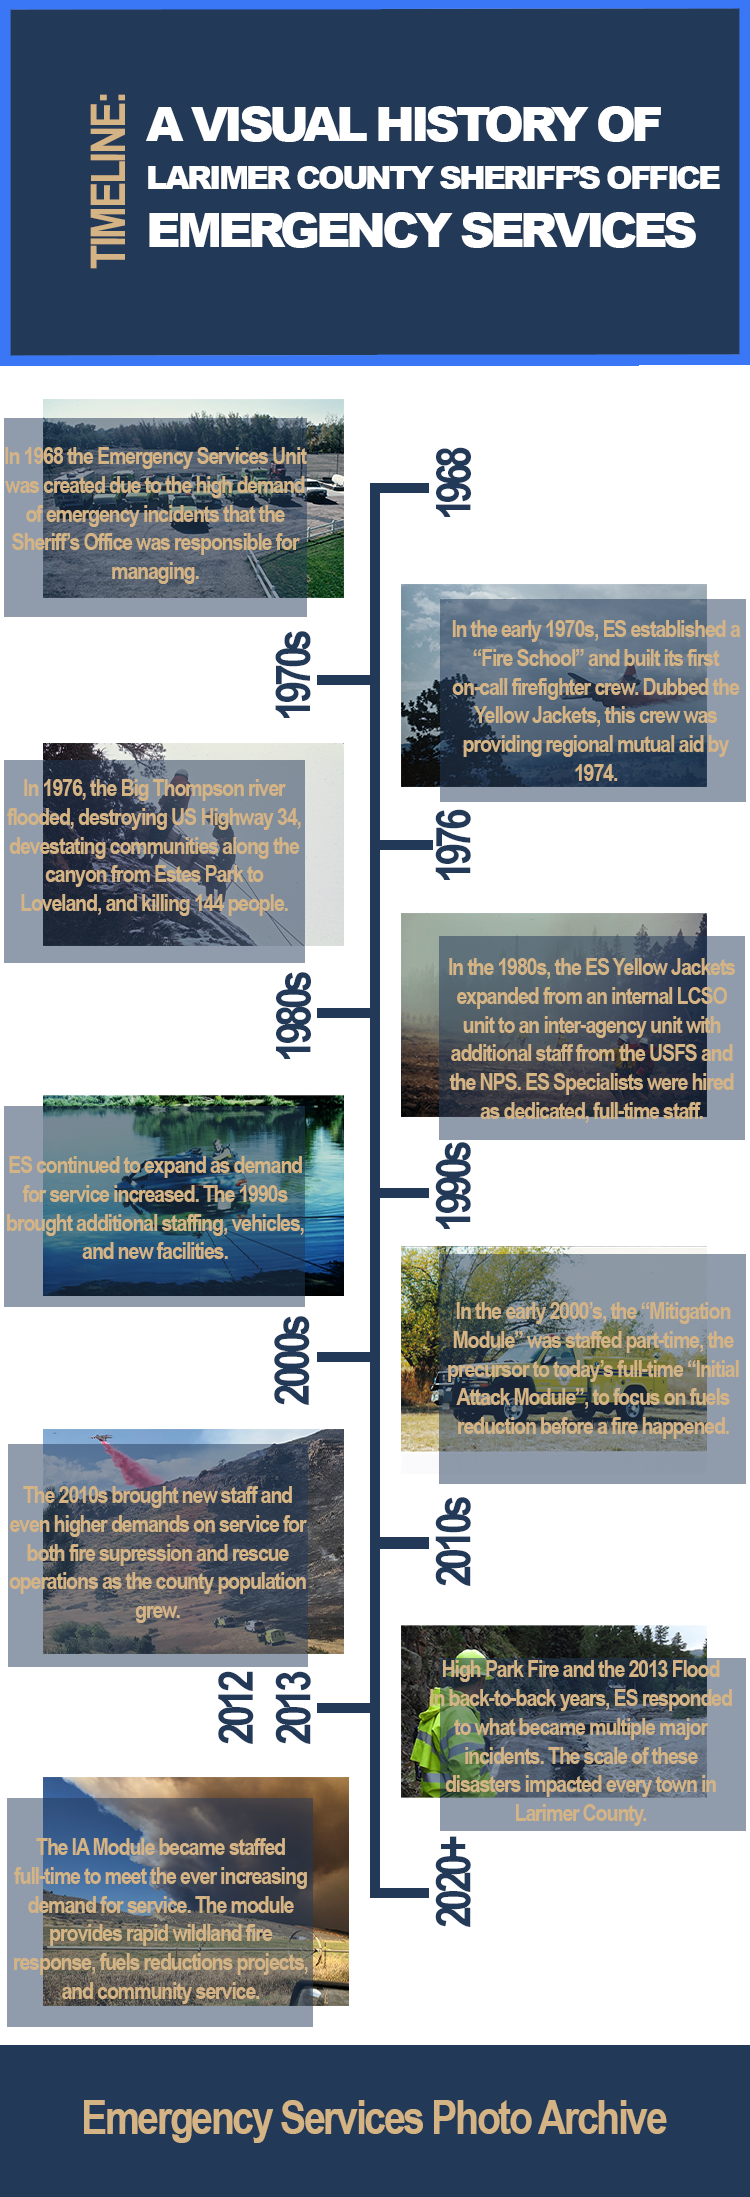 Хронология истории аварийно-спасательных служб с 1968 года.